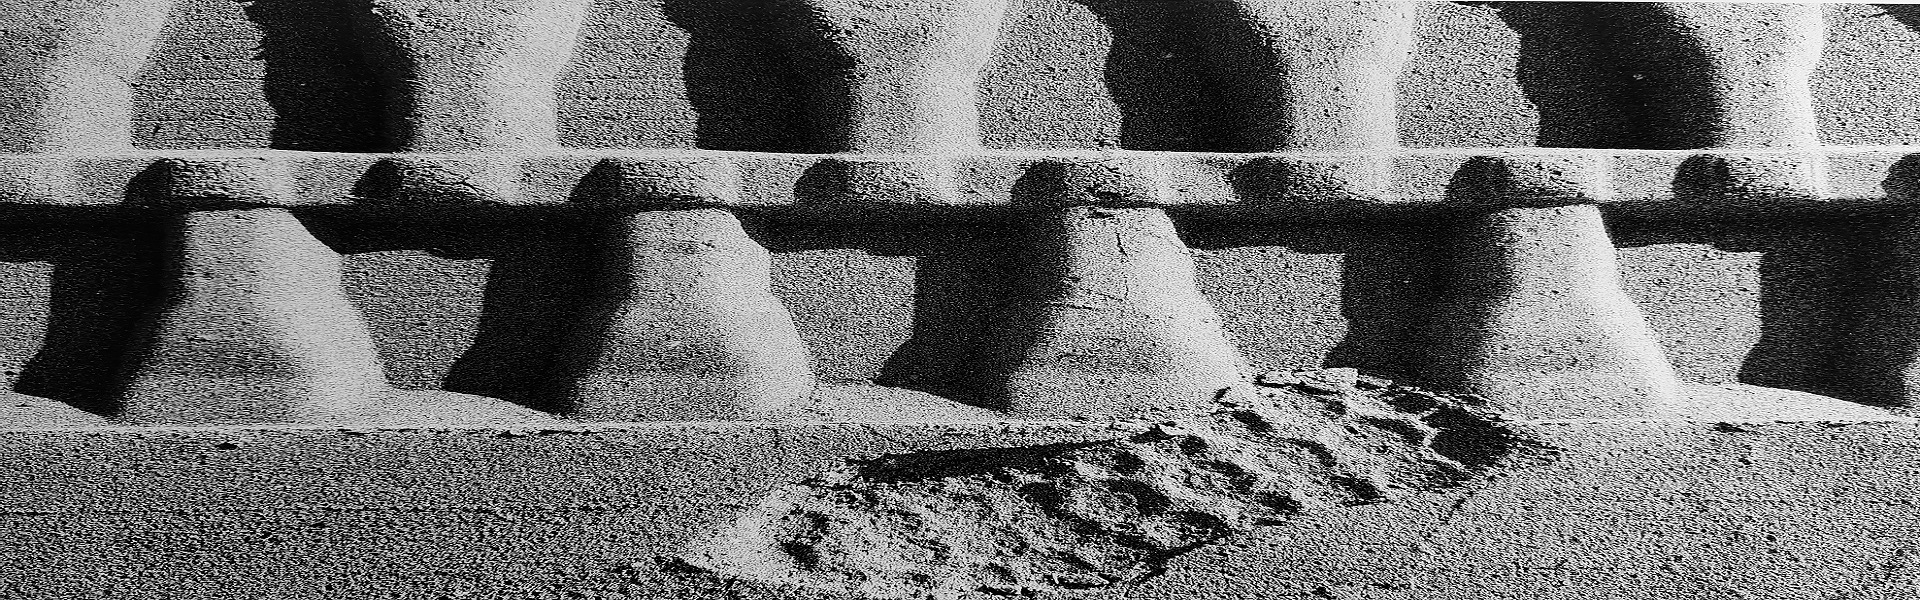 Impronte sulla sabbia, di Marcho Gronge